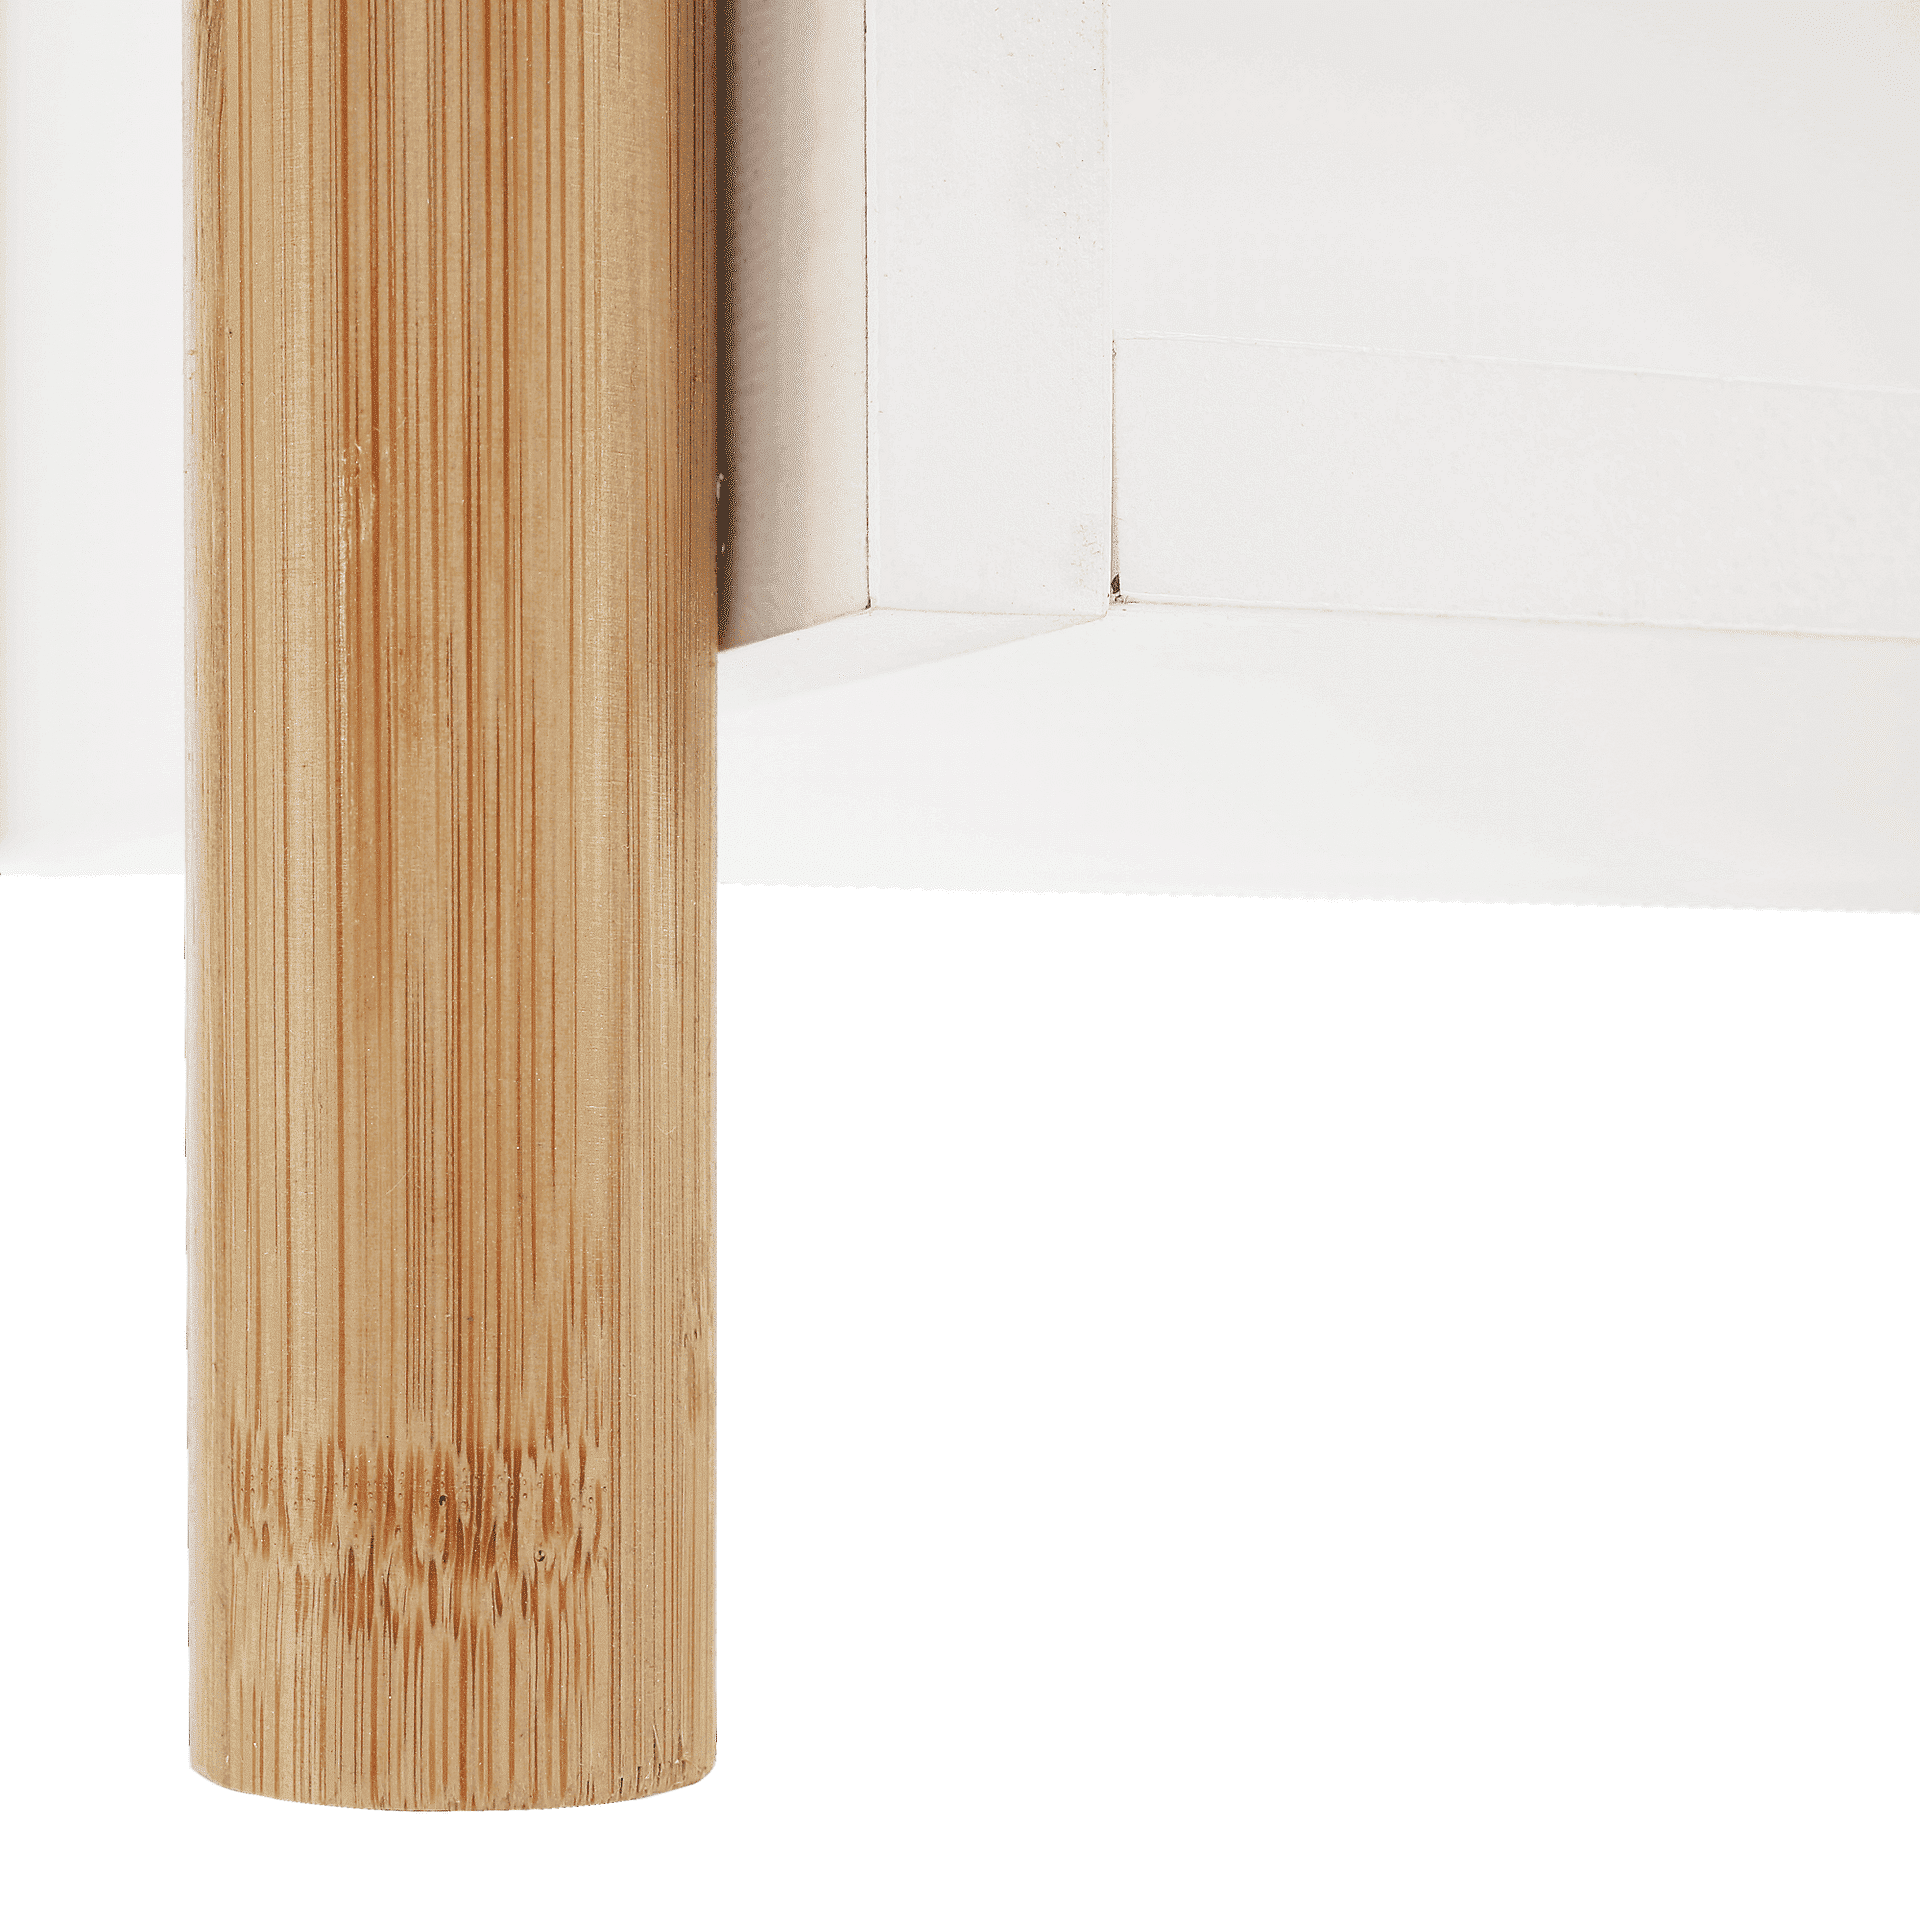 Etajeră cu 2 rafturi, bambus natural / alb, BALTIKA TYPE 1